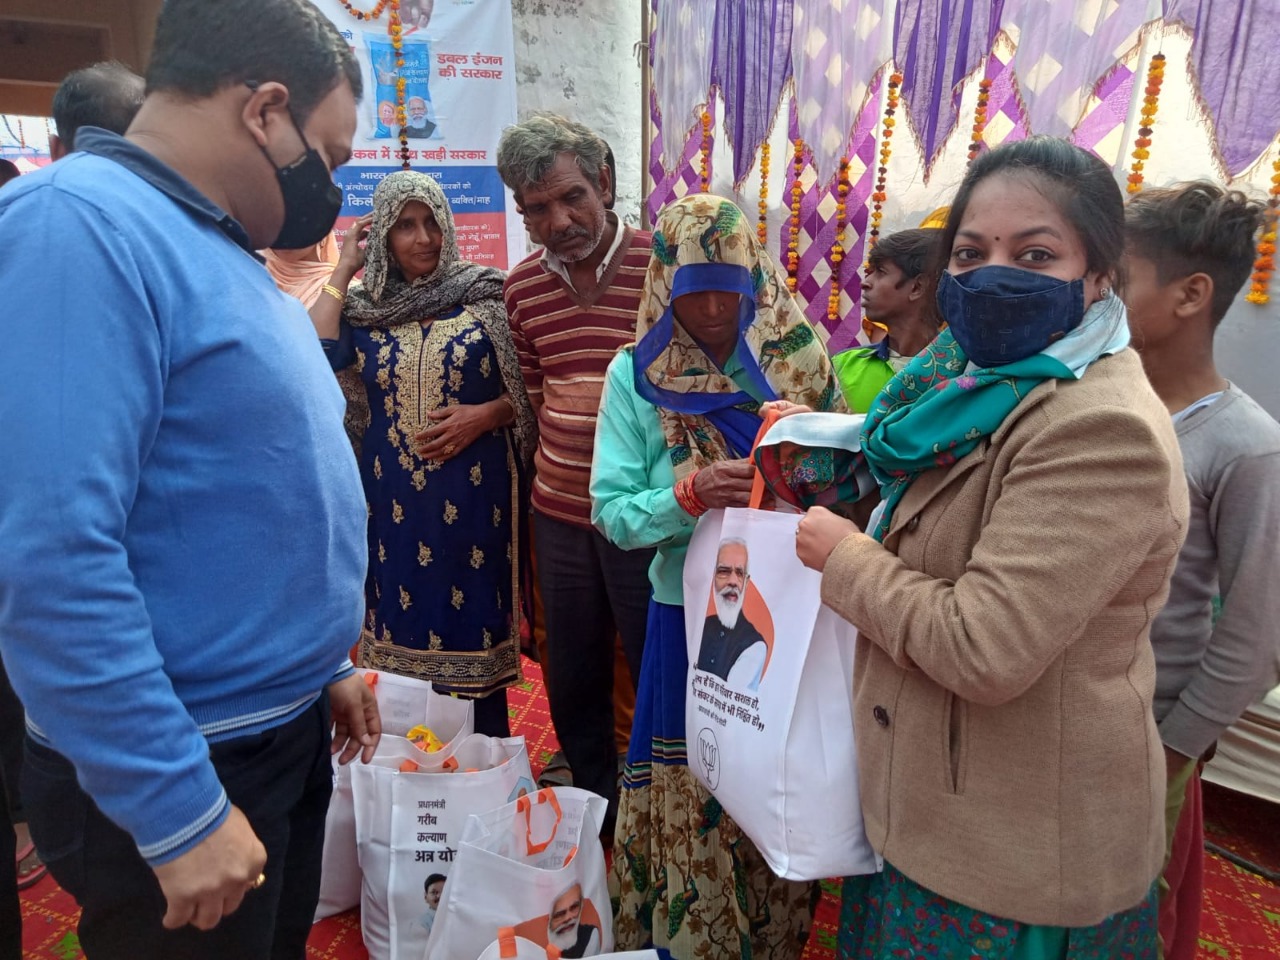 Free ration distribution In Noida: نوئیڈا میں راشن کارڈ ہولڈرز کے درمیان مفت راشن تقسیم